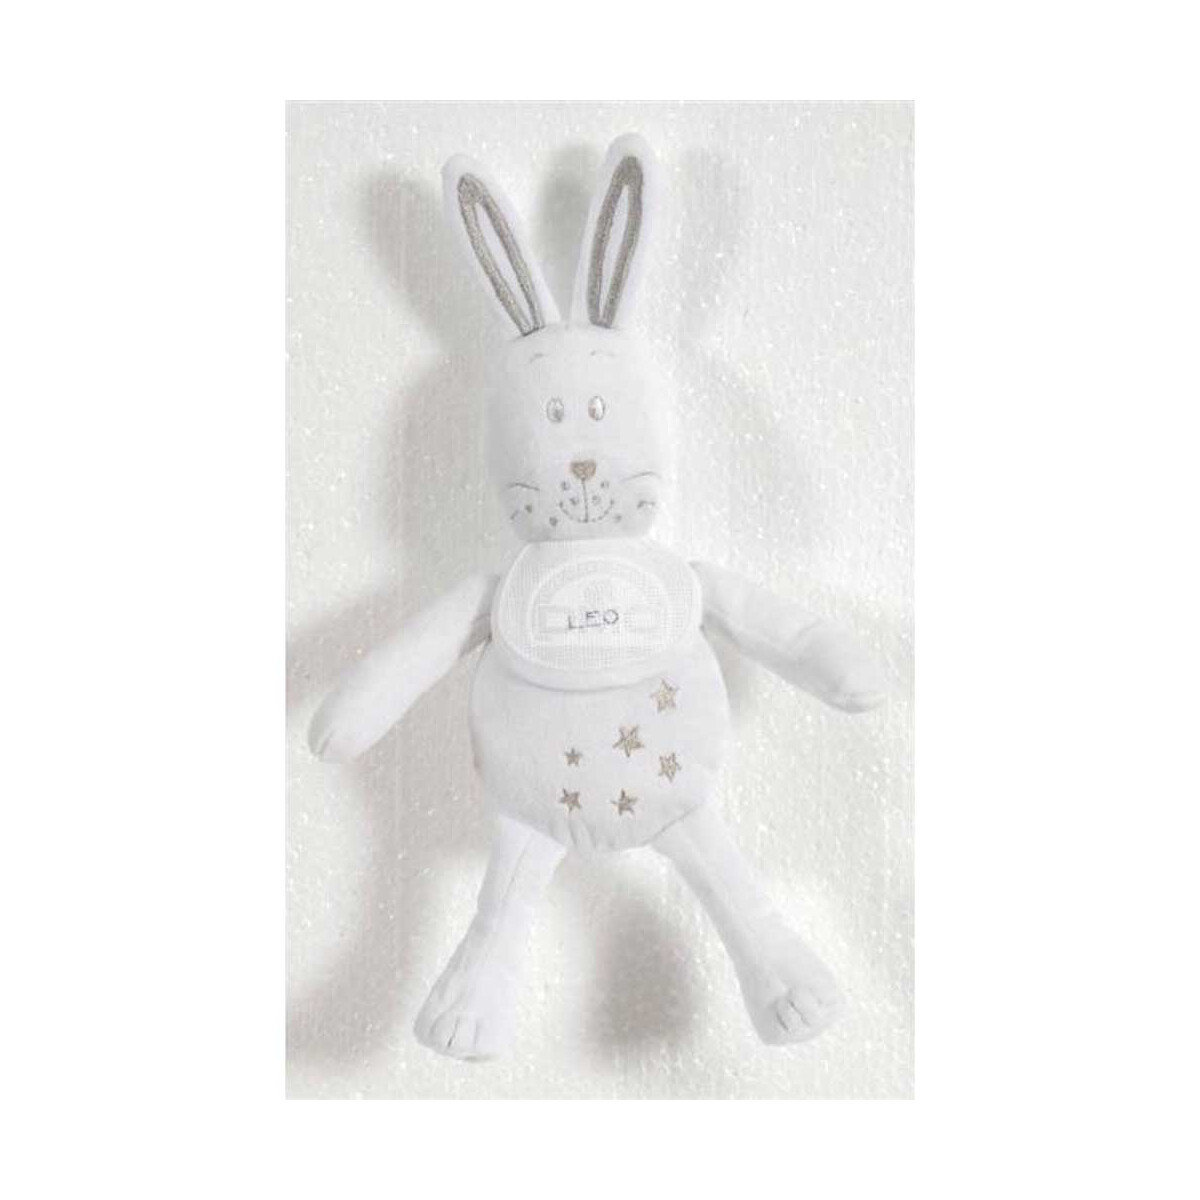 DMC Coccoloso coniglio giocattolo ricamato, bianco